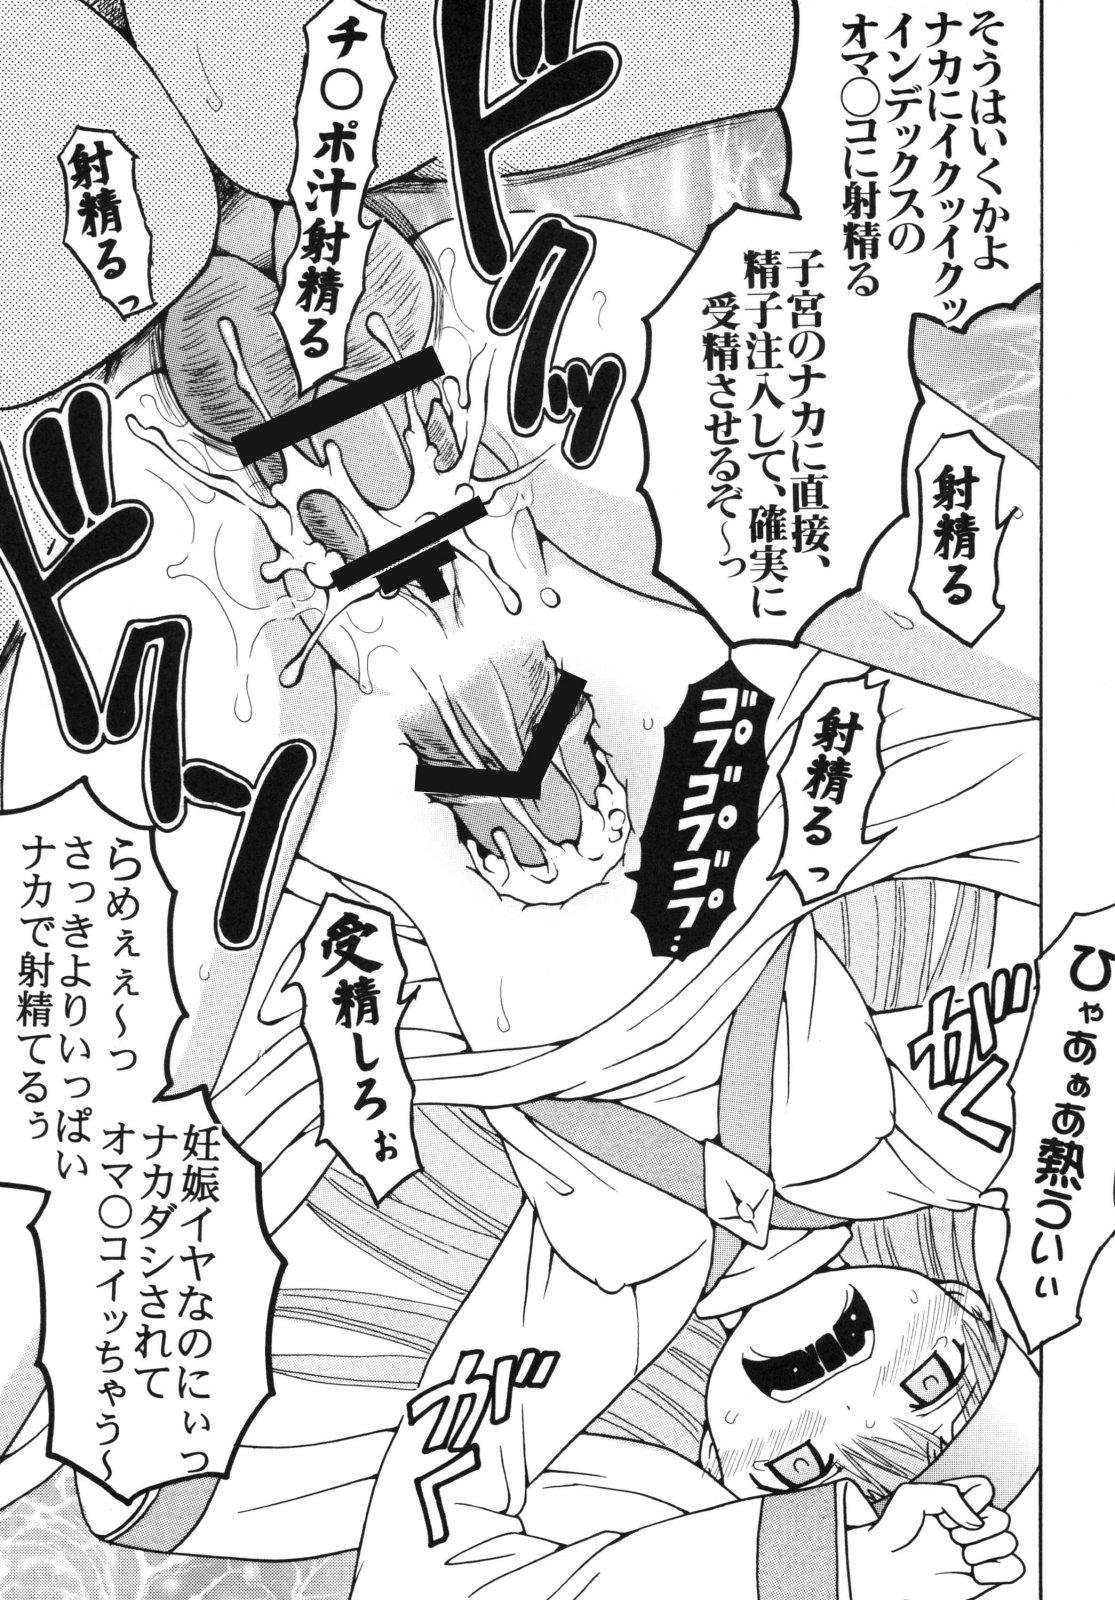 Toaru Otaku no Index #2 46